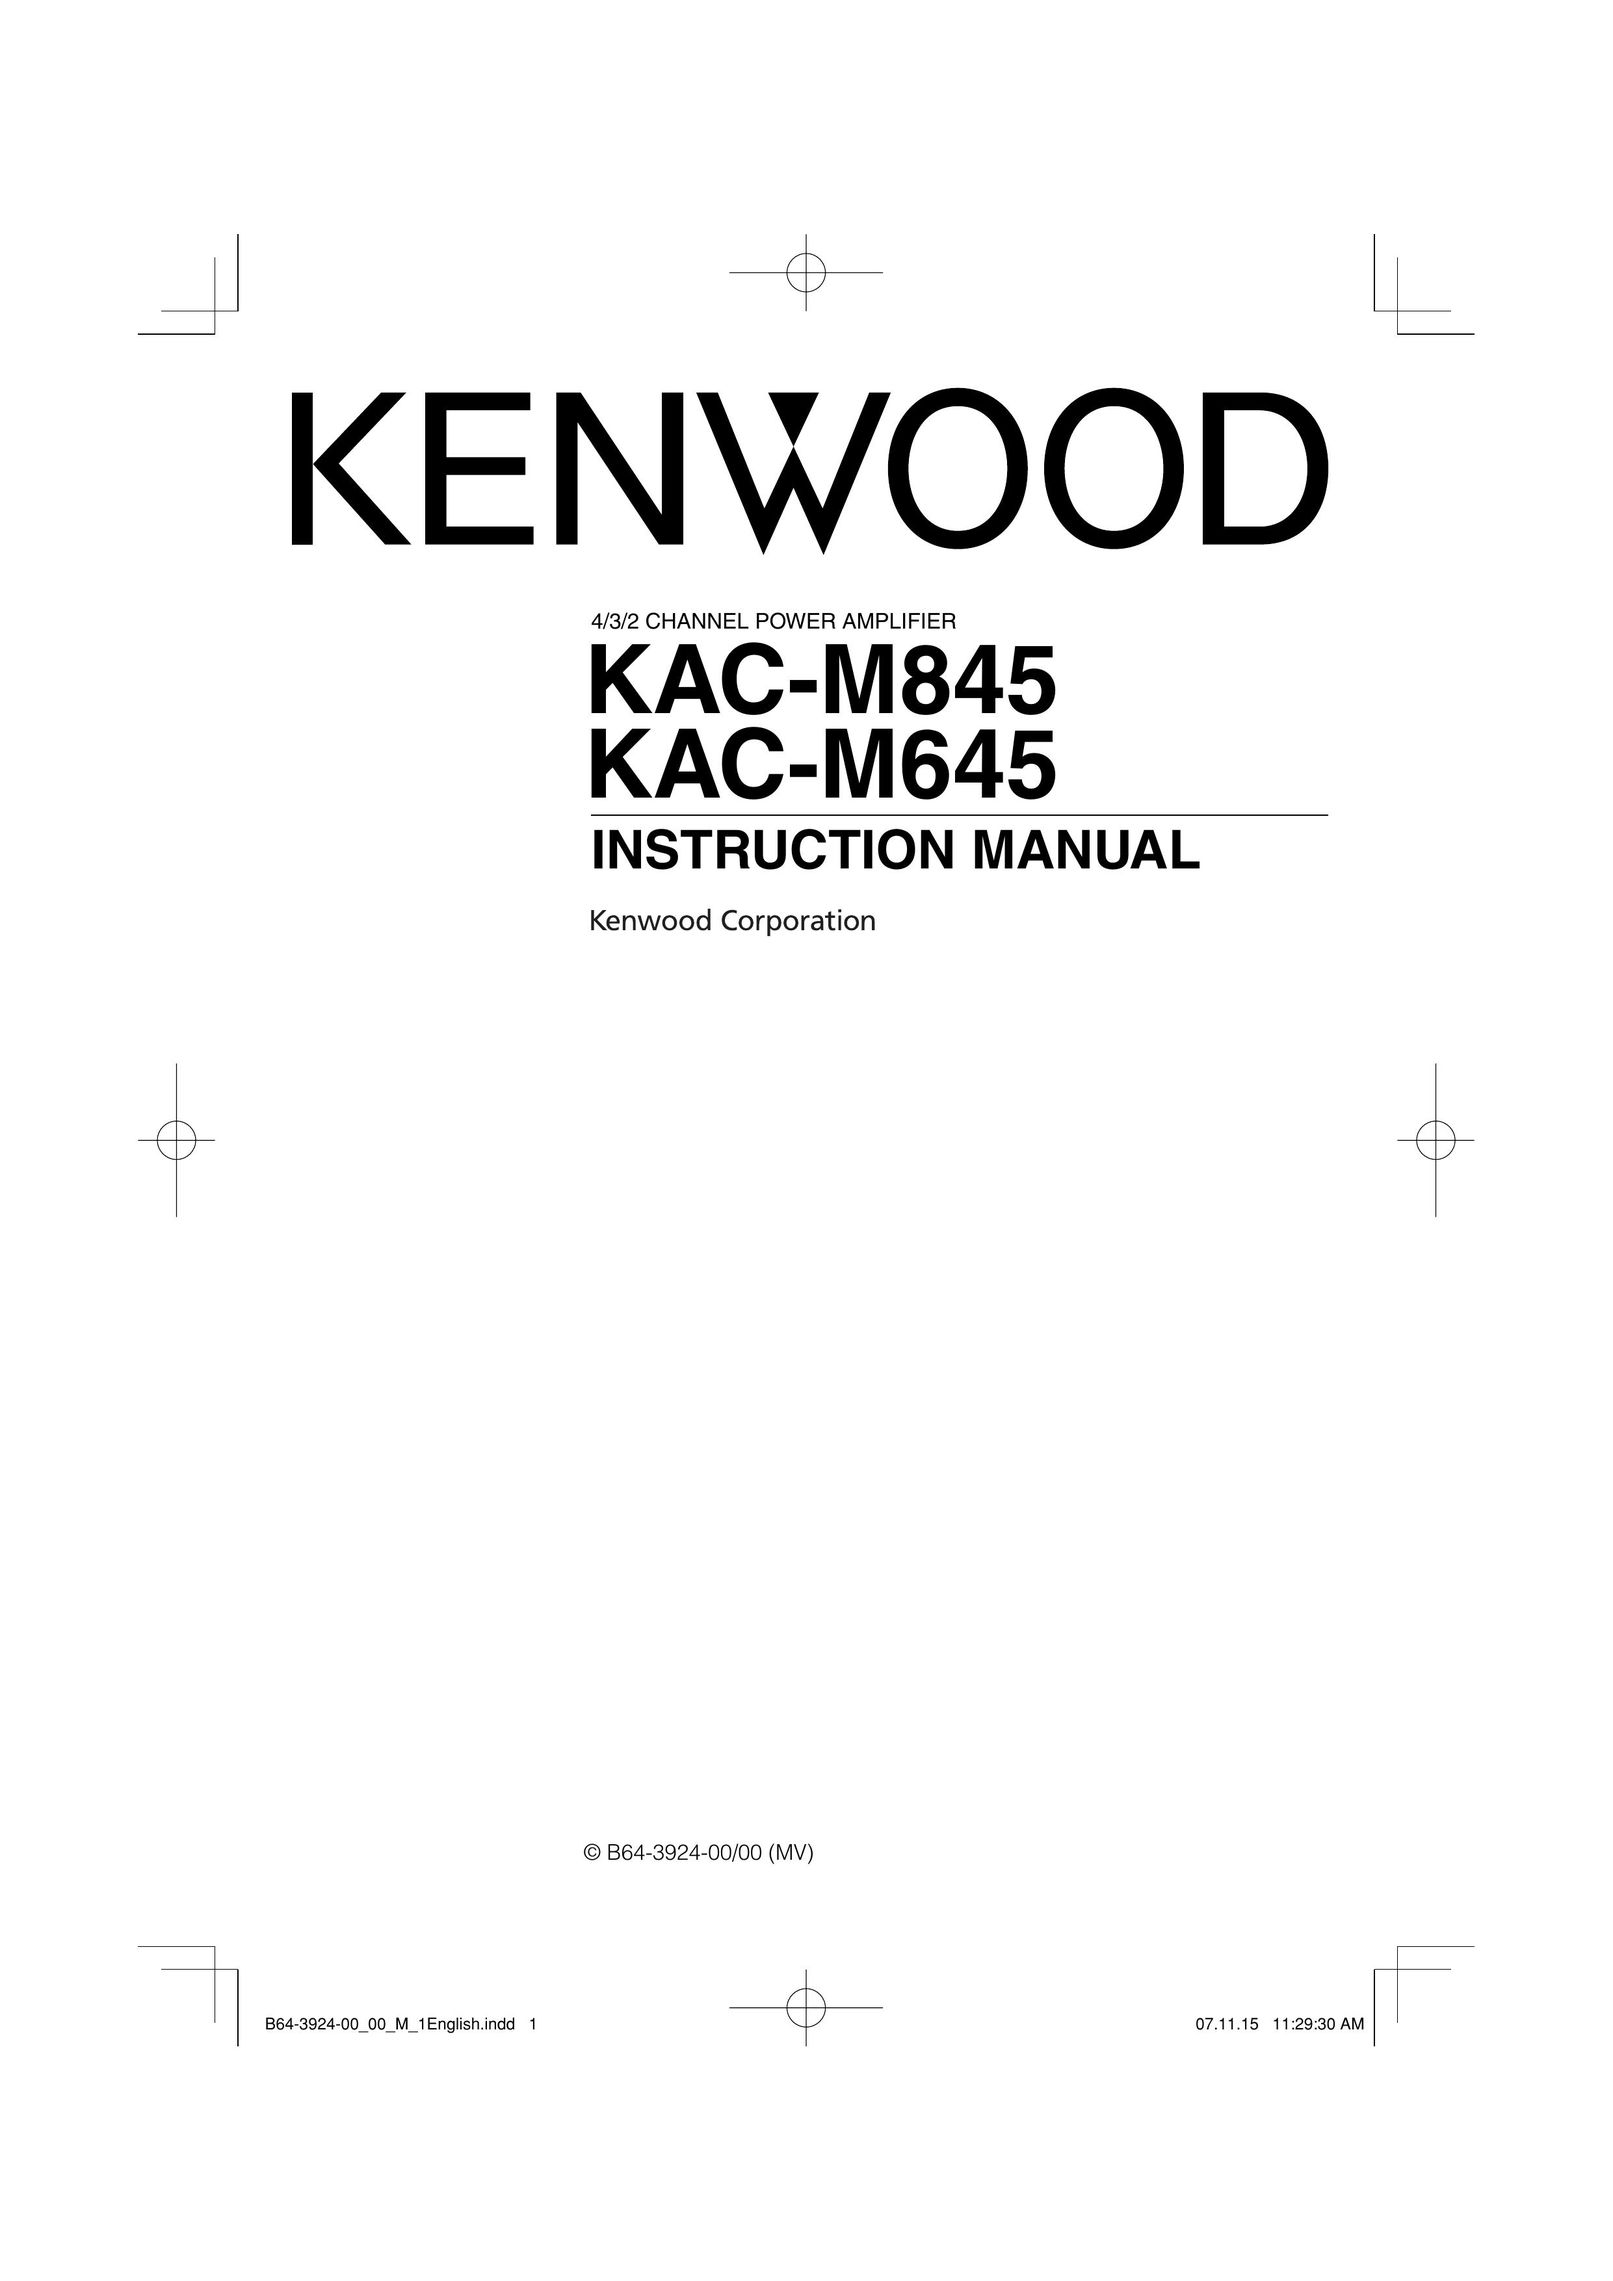 Kenwood KAC-M845 Car Amplifier User Manual